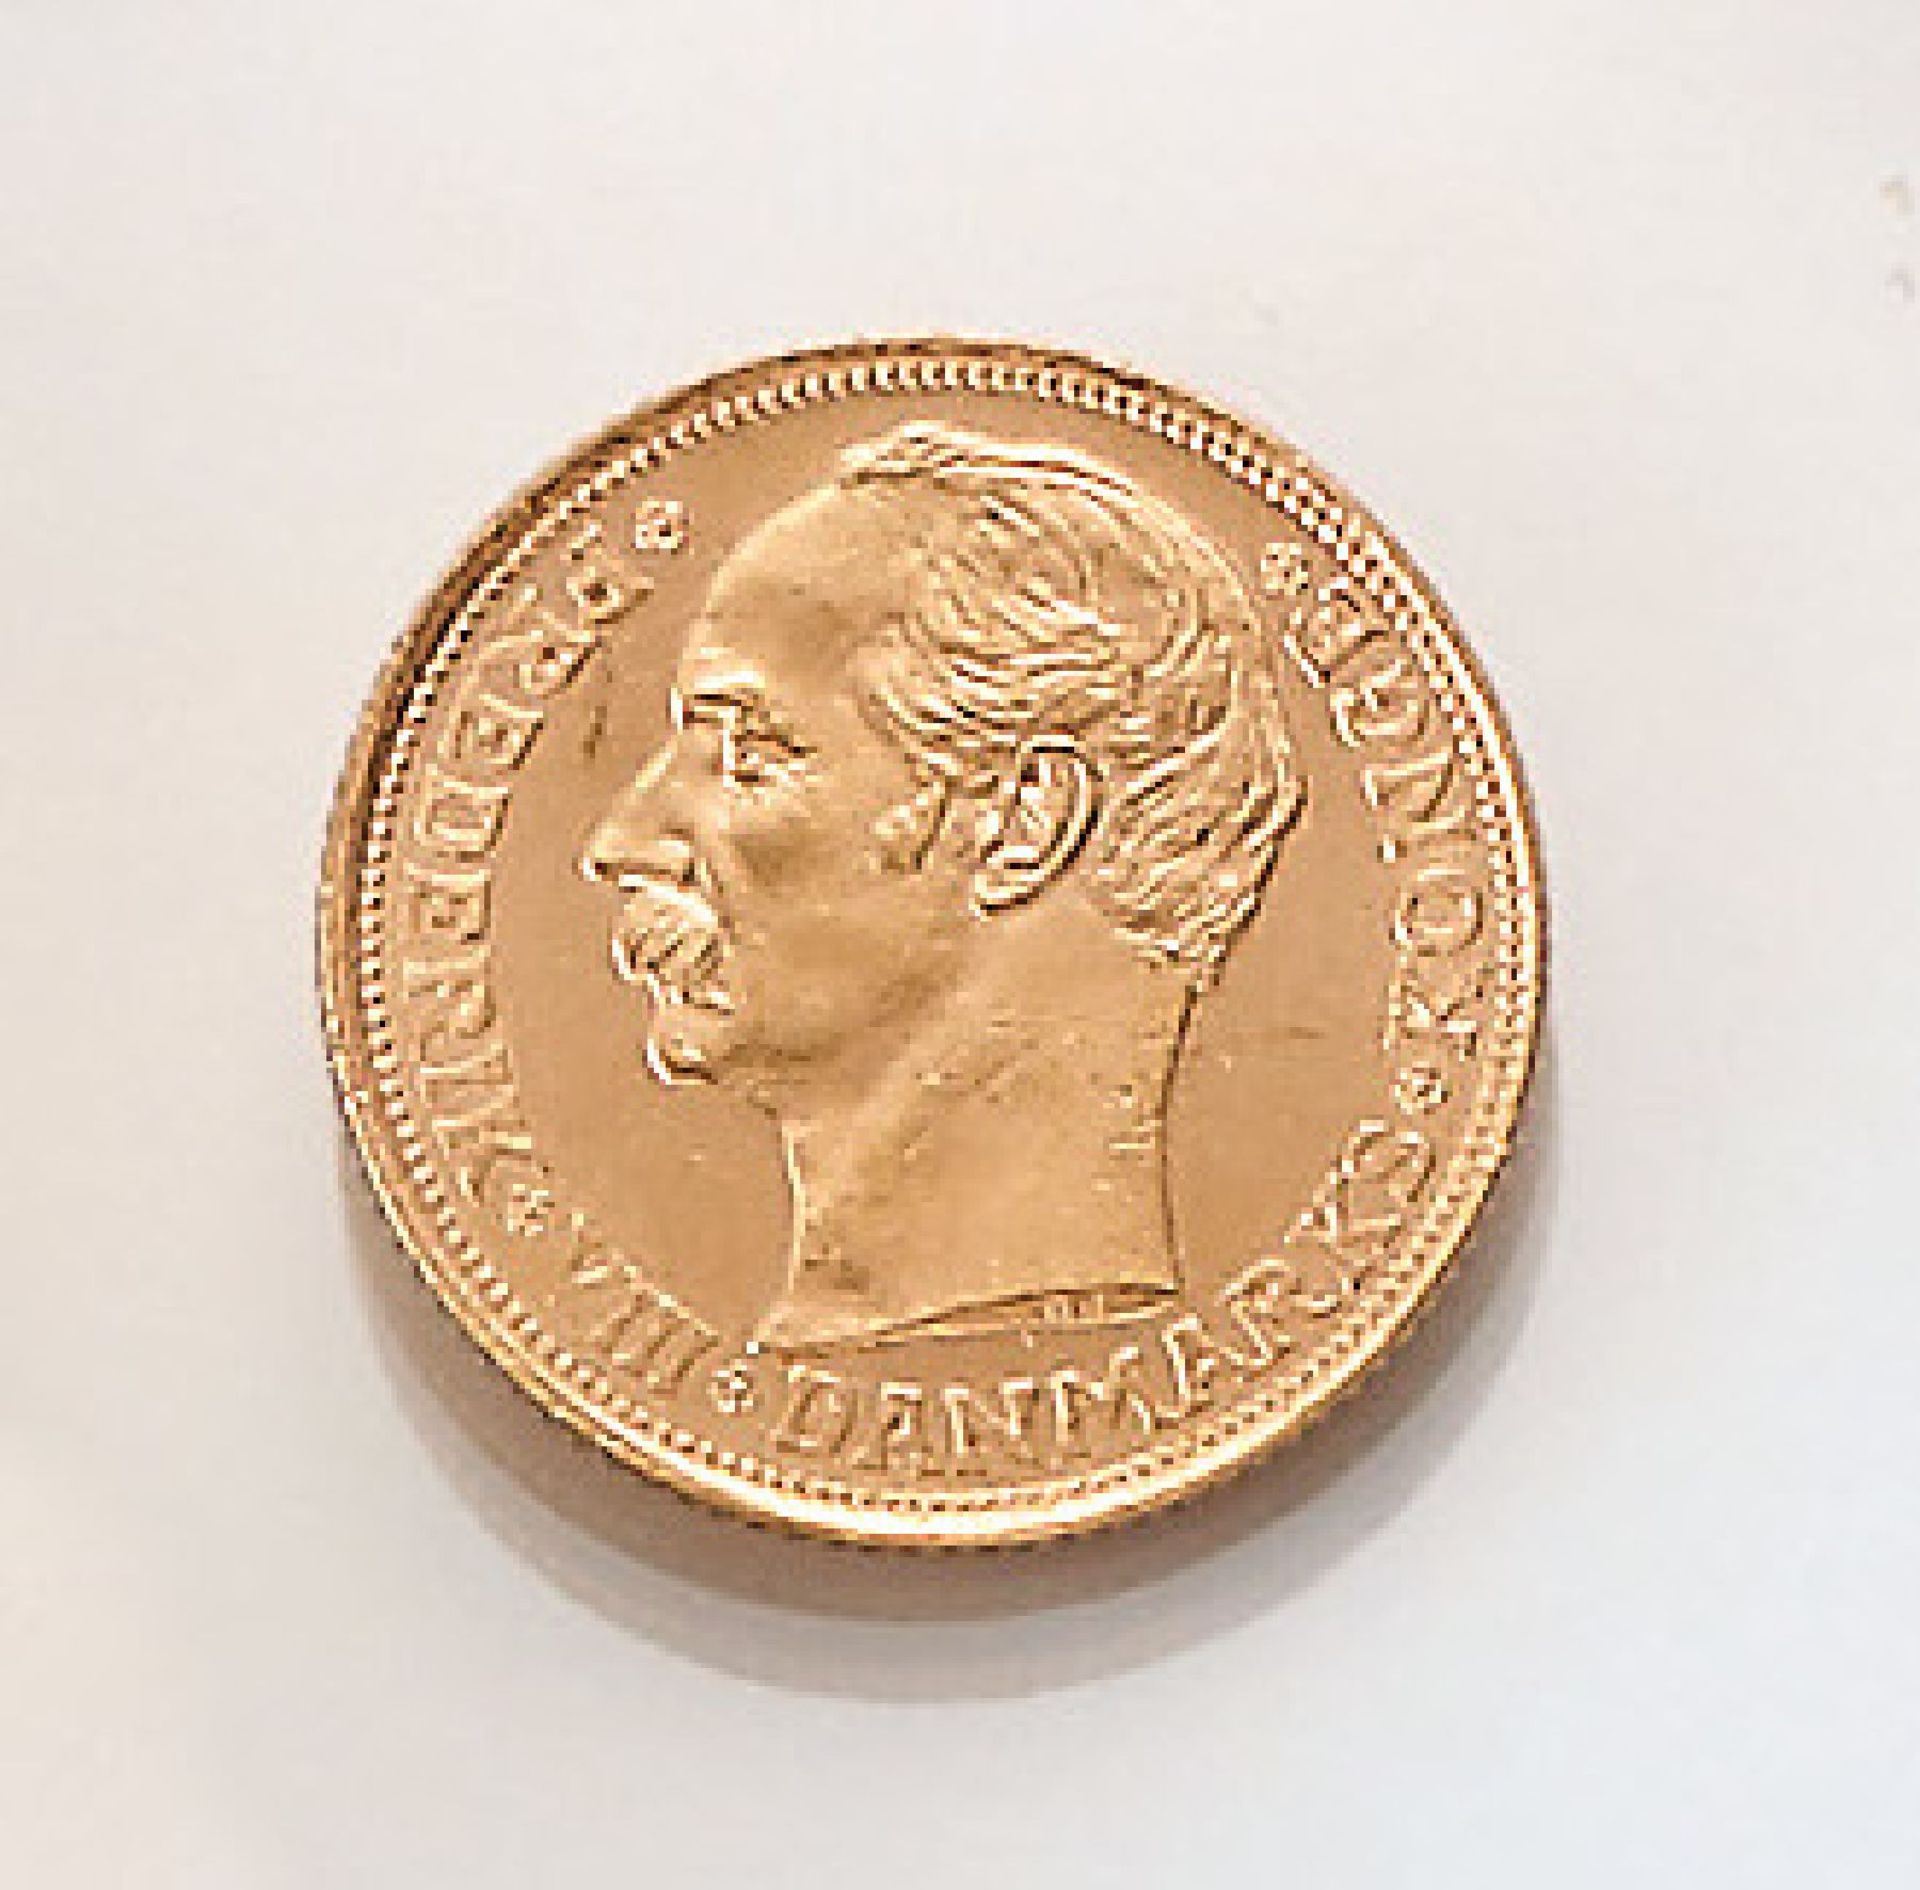 Gold coin, 10 Kroner, Denmark, 1908 , Frederik VIII., Danmarks Konge